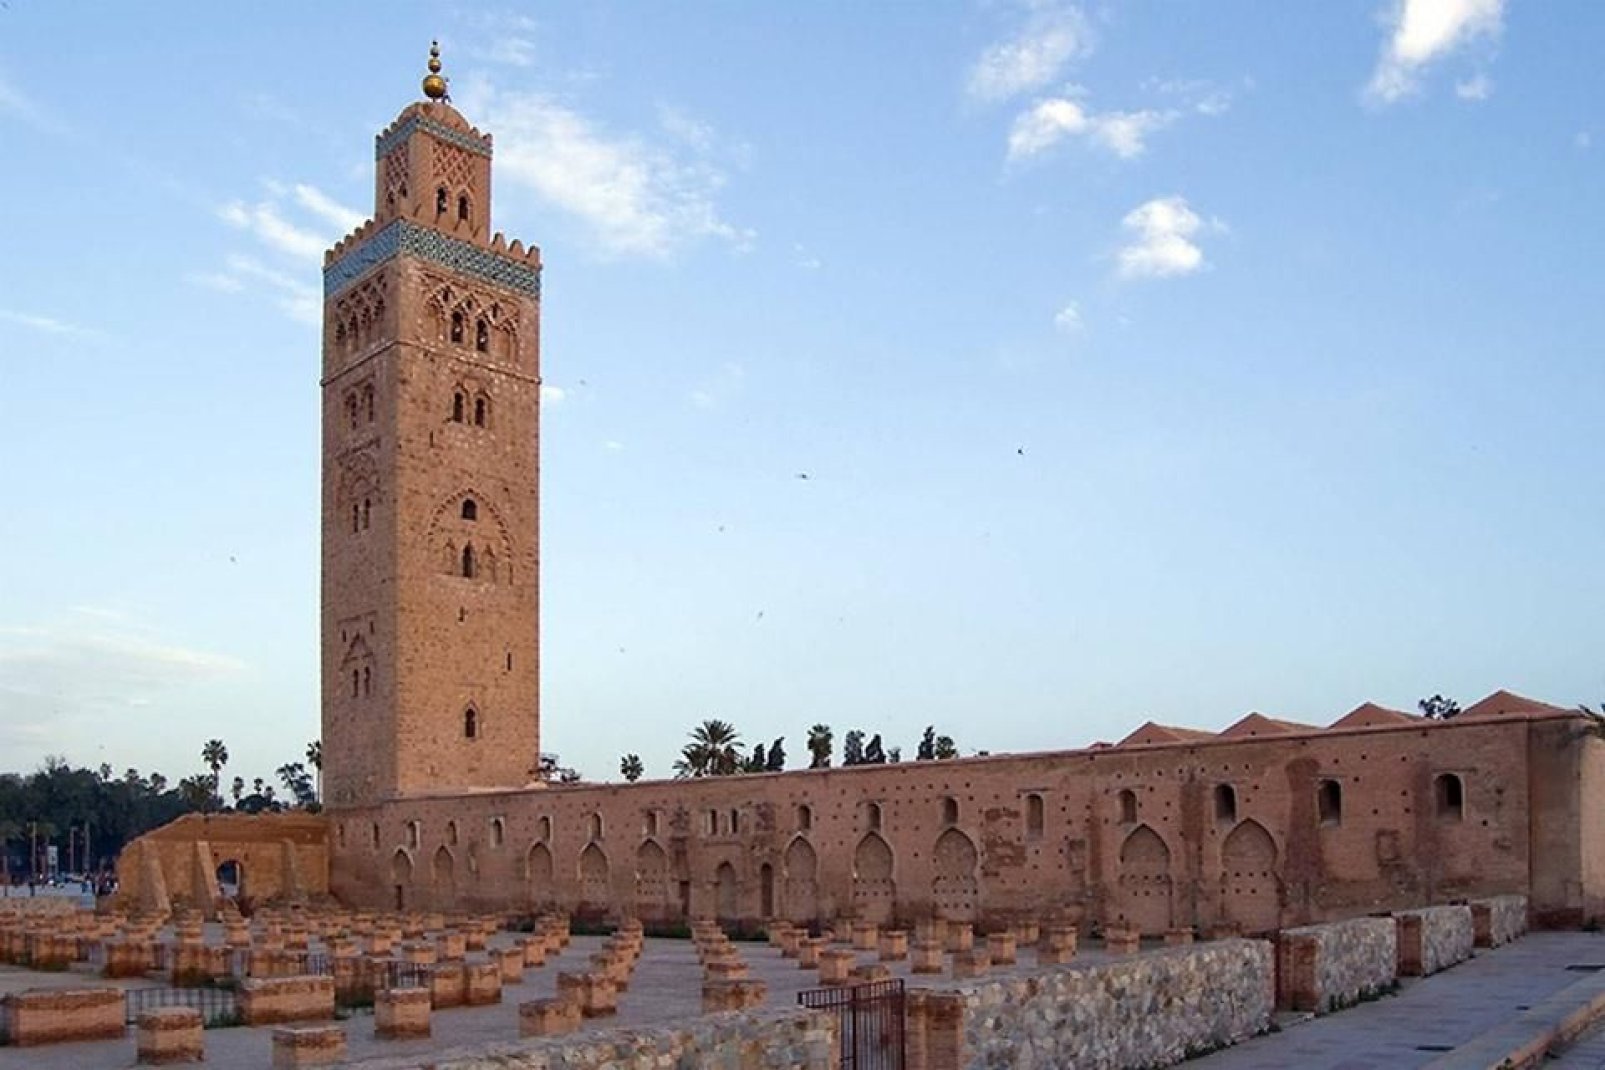 Aunque la mezquita ha elegido la sobriedad y la austeridad, no deja de ser una maravilla arquitectónica y uno de los monumentos marroquíes más bonitos.